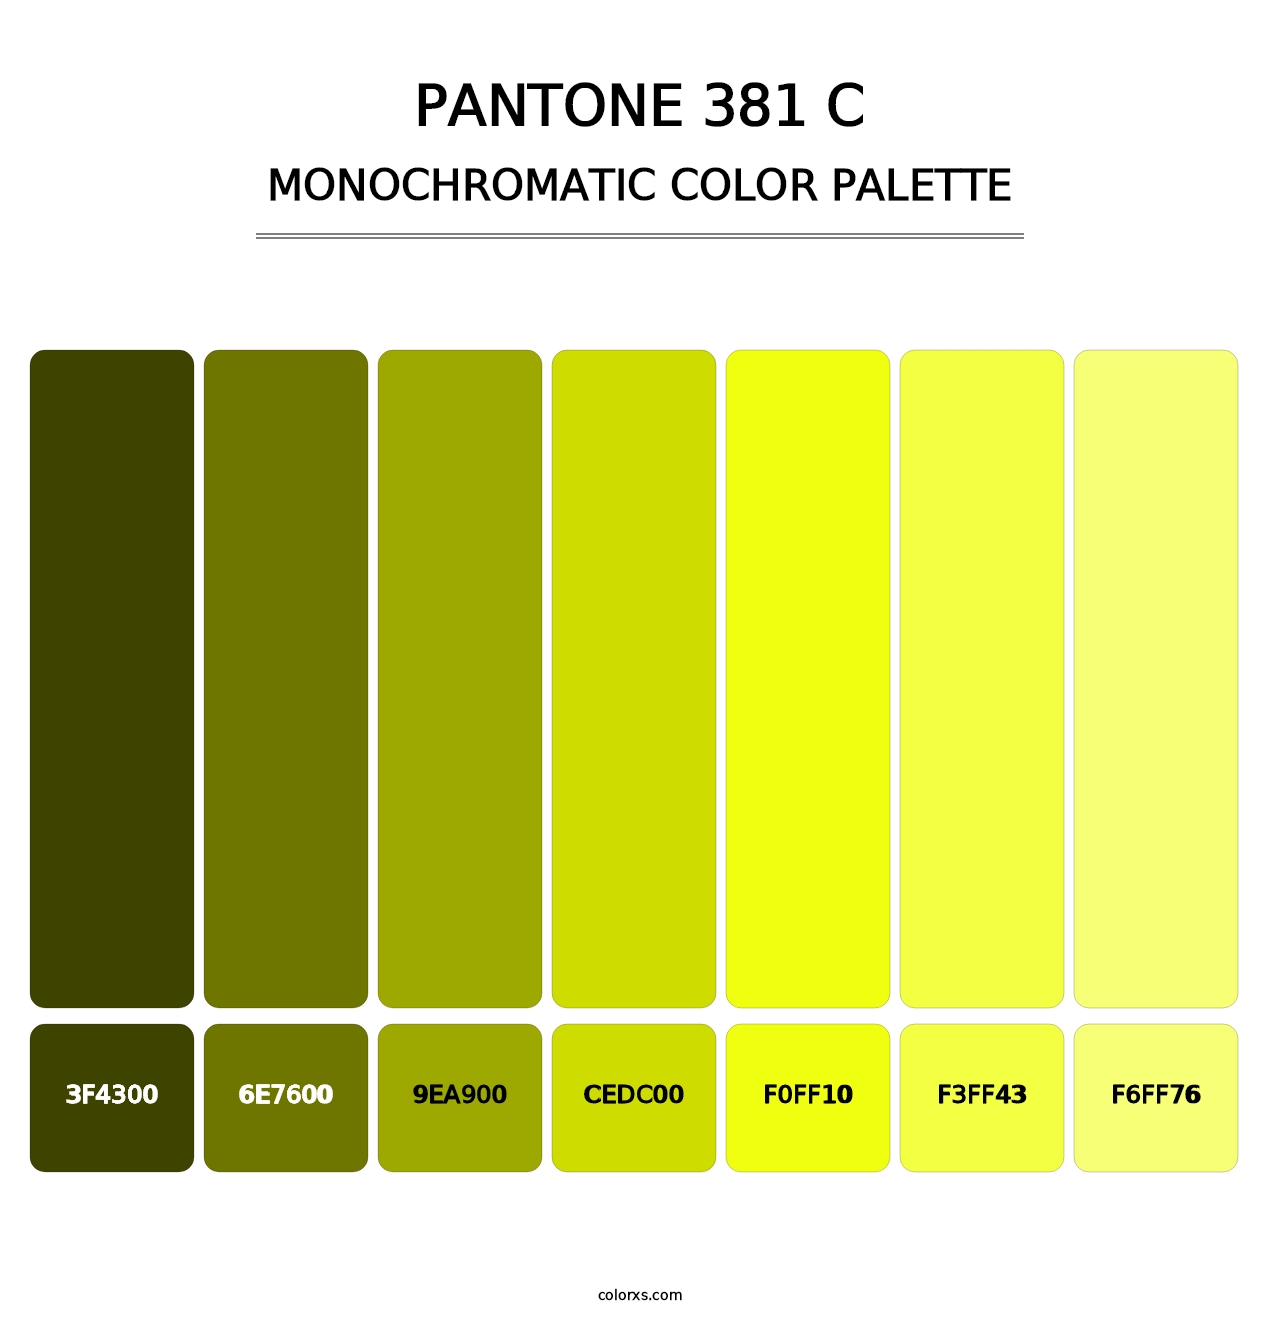 PANTONE 381 C - Monochromatic Color Palette